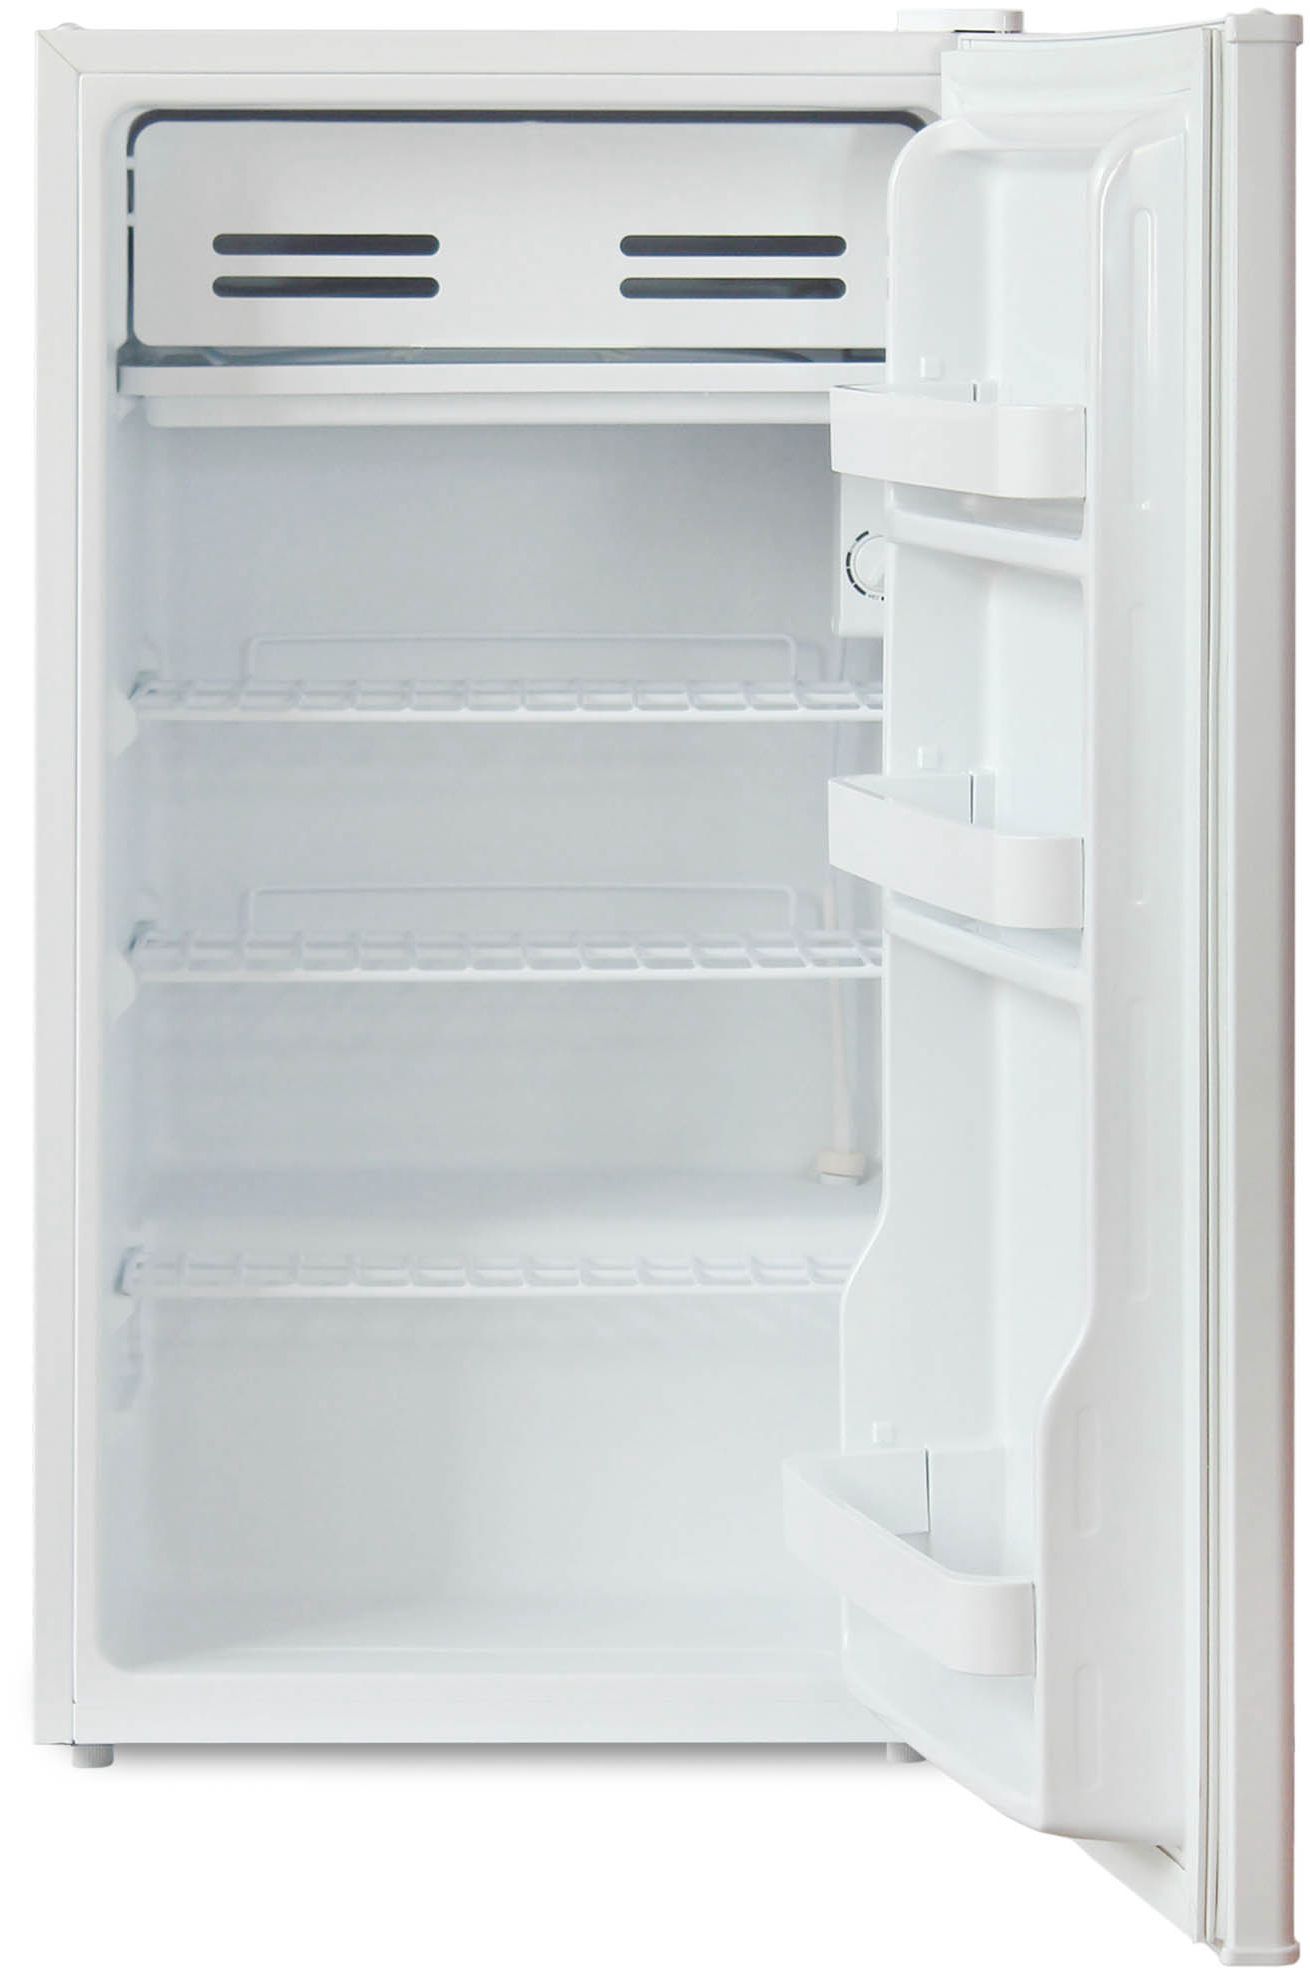 холодильник бирюса 90, купить в Красноярске холодильник бирюса 90,  купить в Красноярске дешево холодильник бирюса 90, купить в Красноярске минимальной цене холодильник бирюса 90